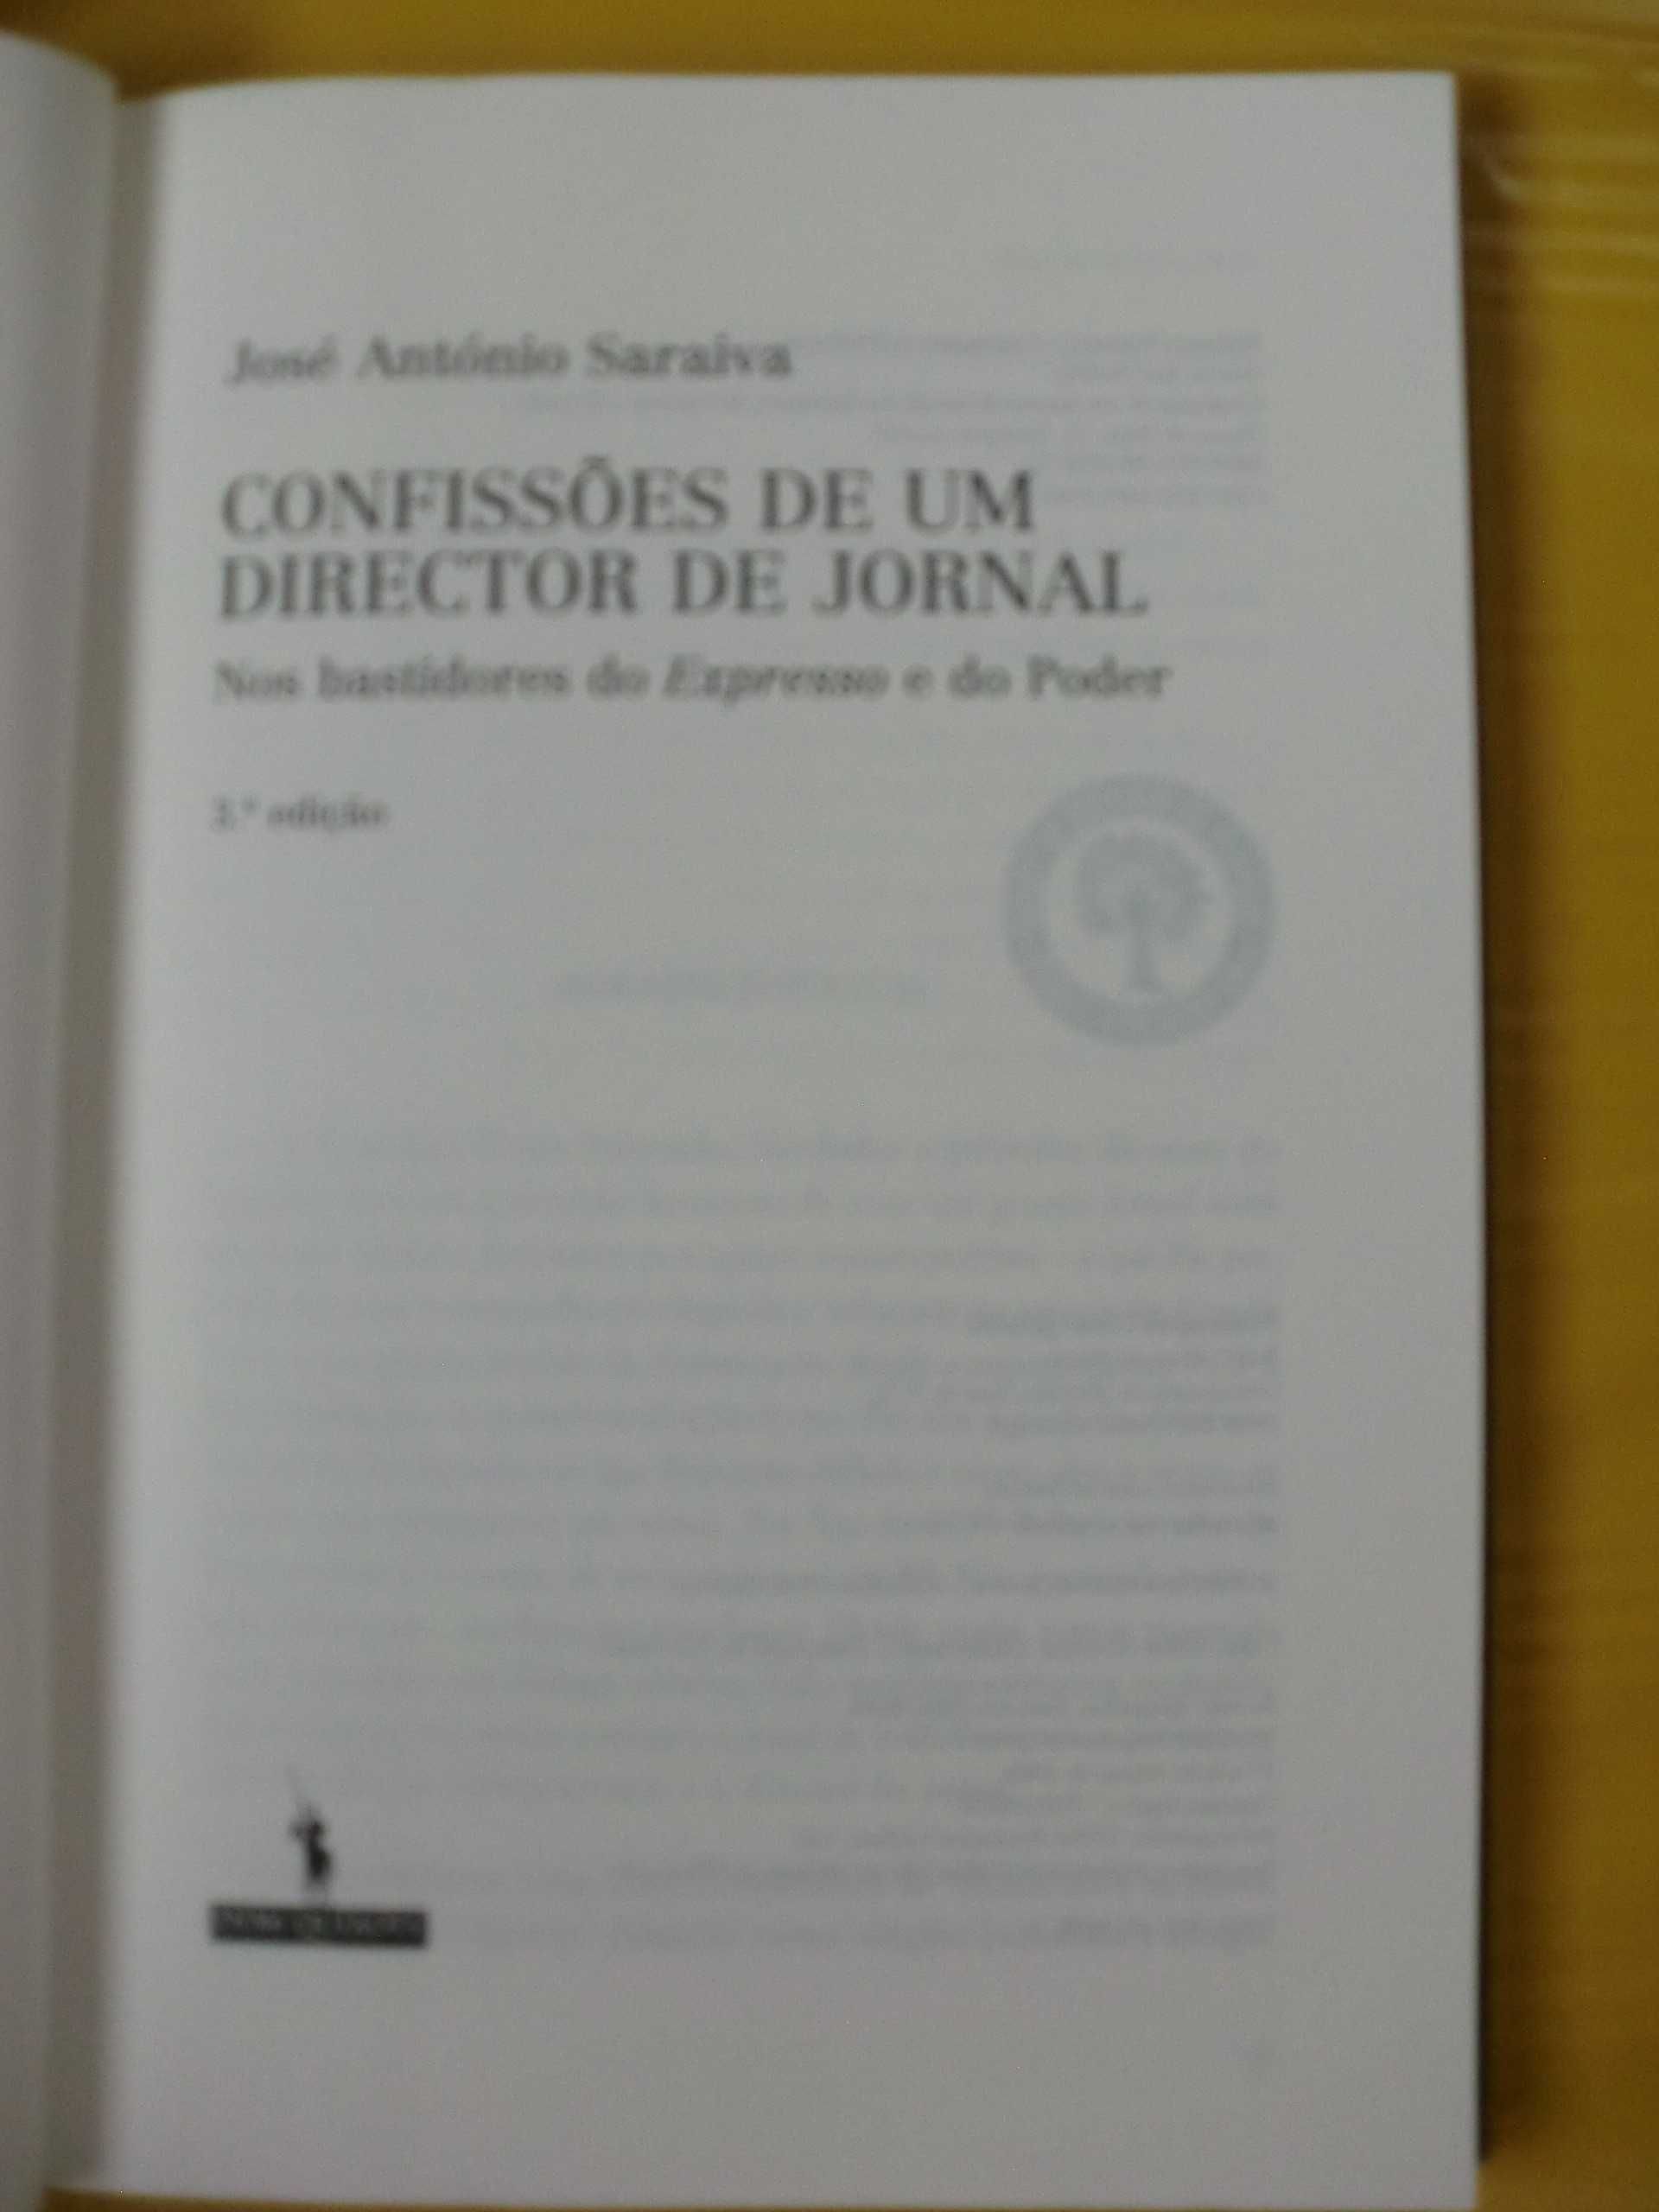 Confissões de um director de jornal
de José António Saraiva